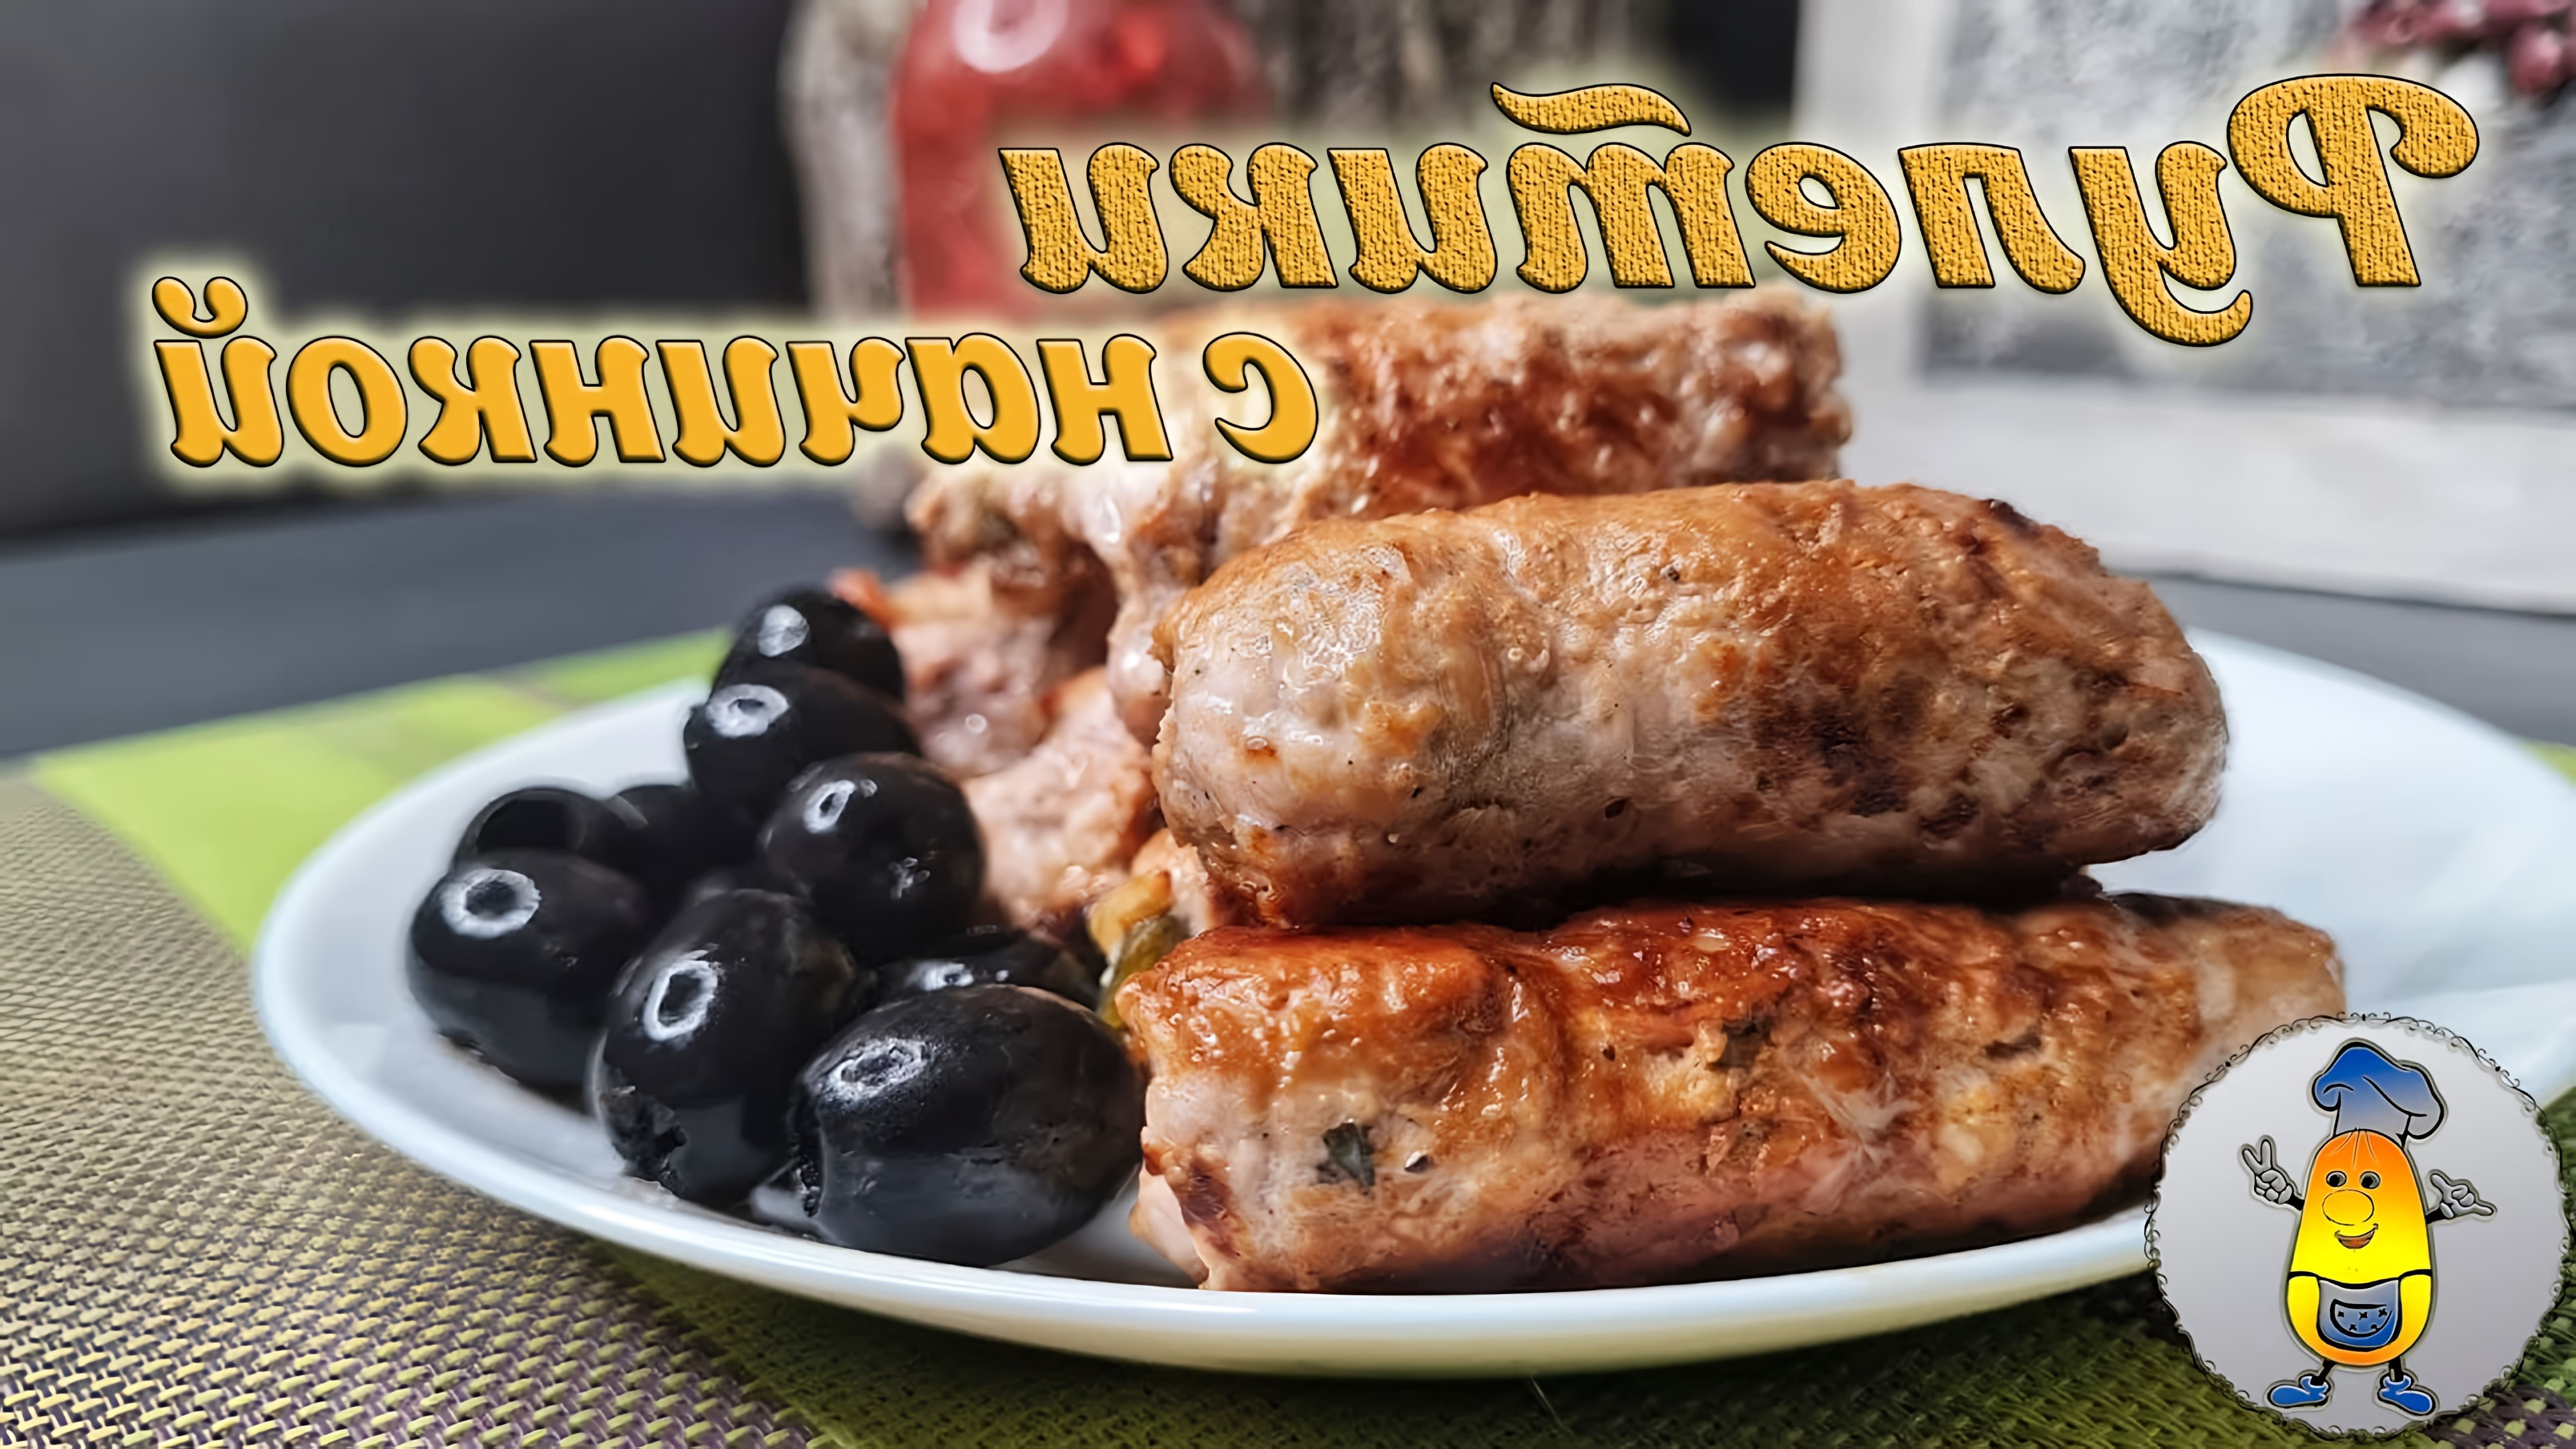 В этом видео демонстрируется рецепт мясных рулетиков с тремя разными начинками: жареными грибами, солеными огурцами и маринованным луком, а также консервированным ананасом